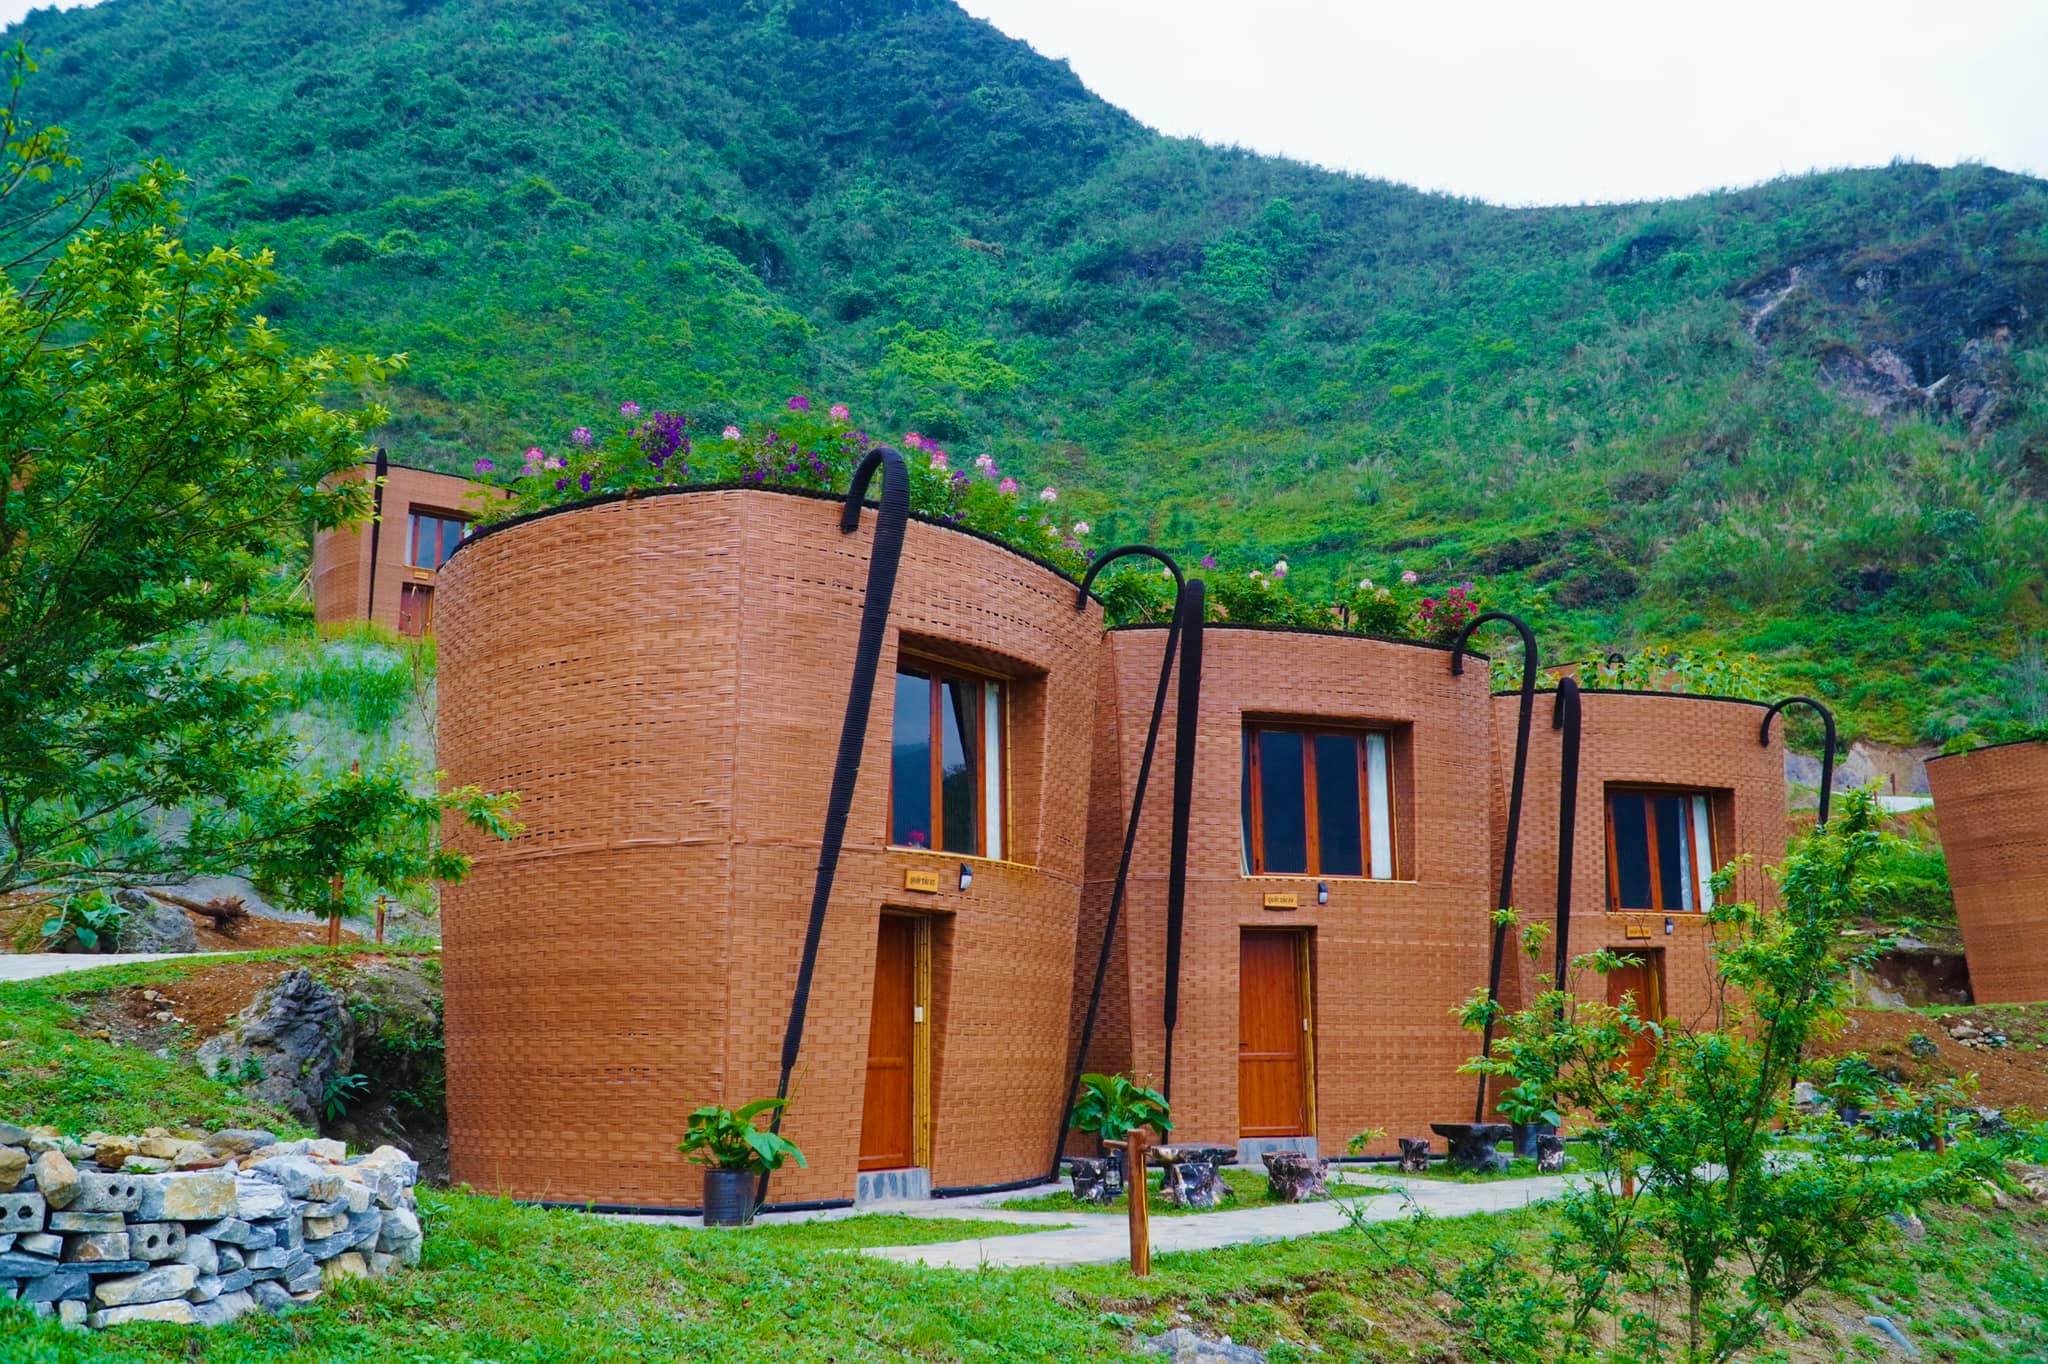 H’Mong Village Resort - Ẩn chứa nét đẹp Hà Giang